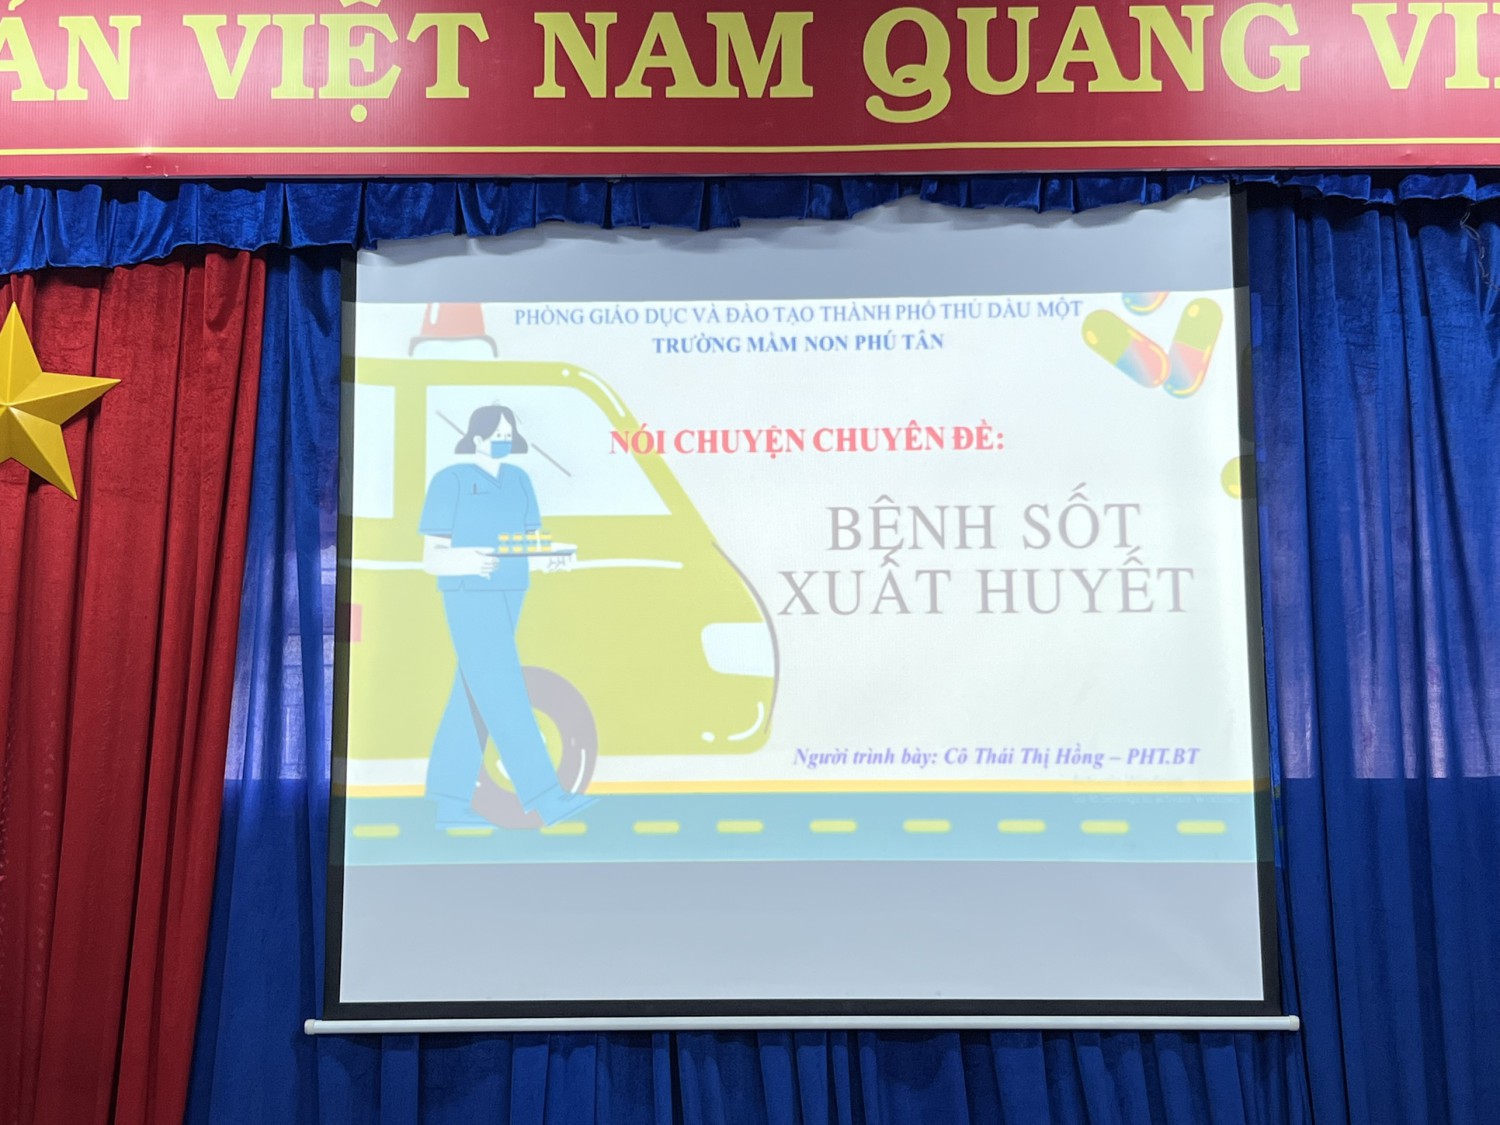 Tập huấn cách phòng tránh một số bệnh học đường thường gặp, phòng chống dịch bệnh sốt xuất huyết, tay chân miệng, vệ sinh APTP trong trường MN Phú Tân